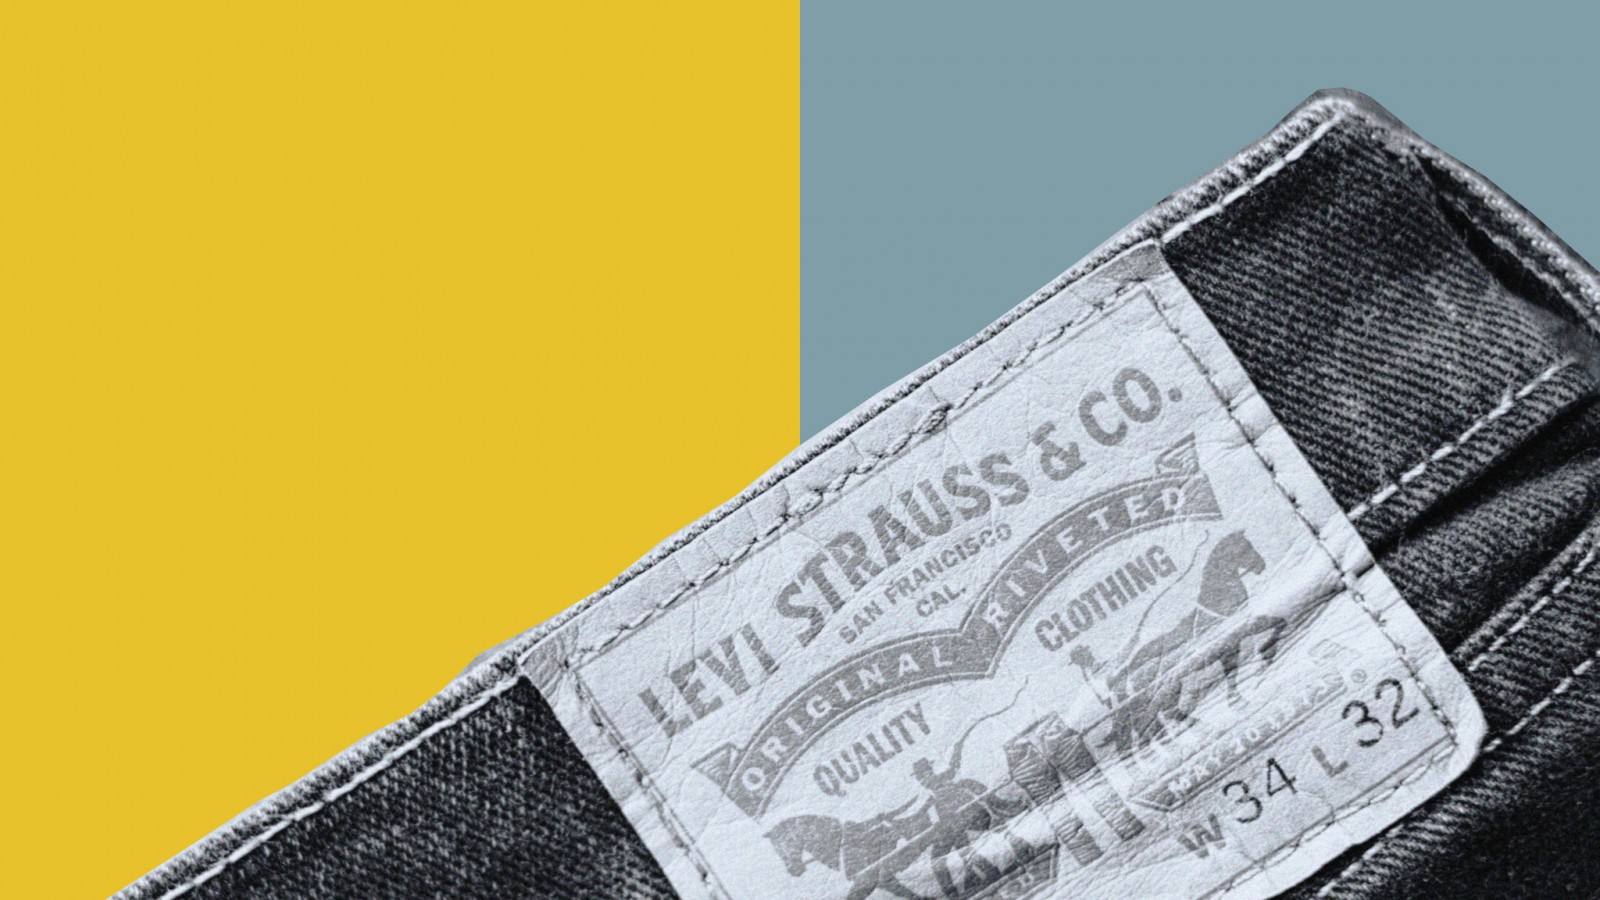 Nếu bạn có một cái quần Levis năm 1906 thì bạn đang có 580 triệu đồng